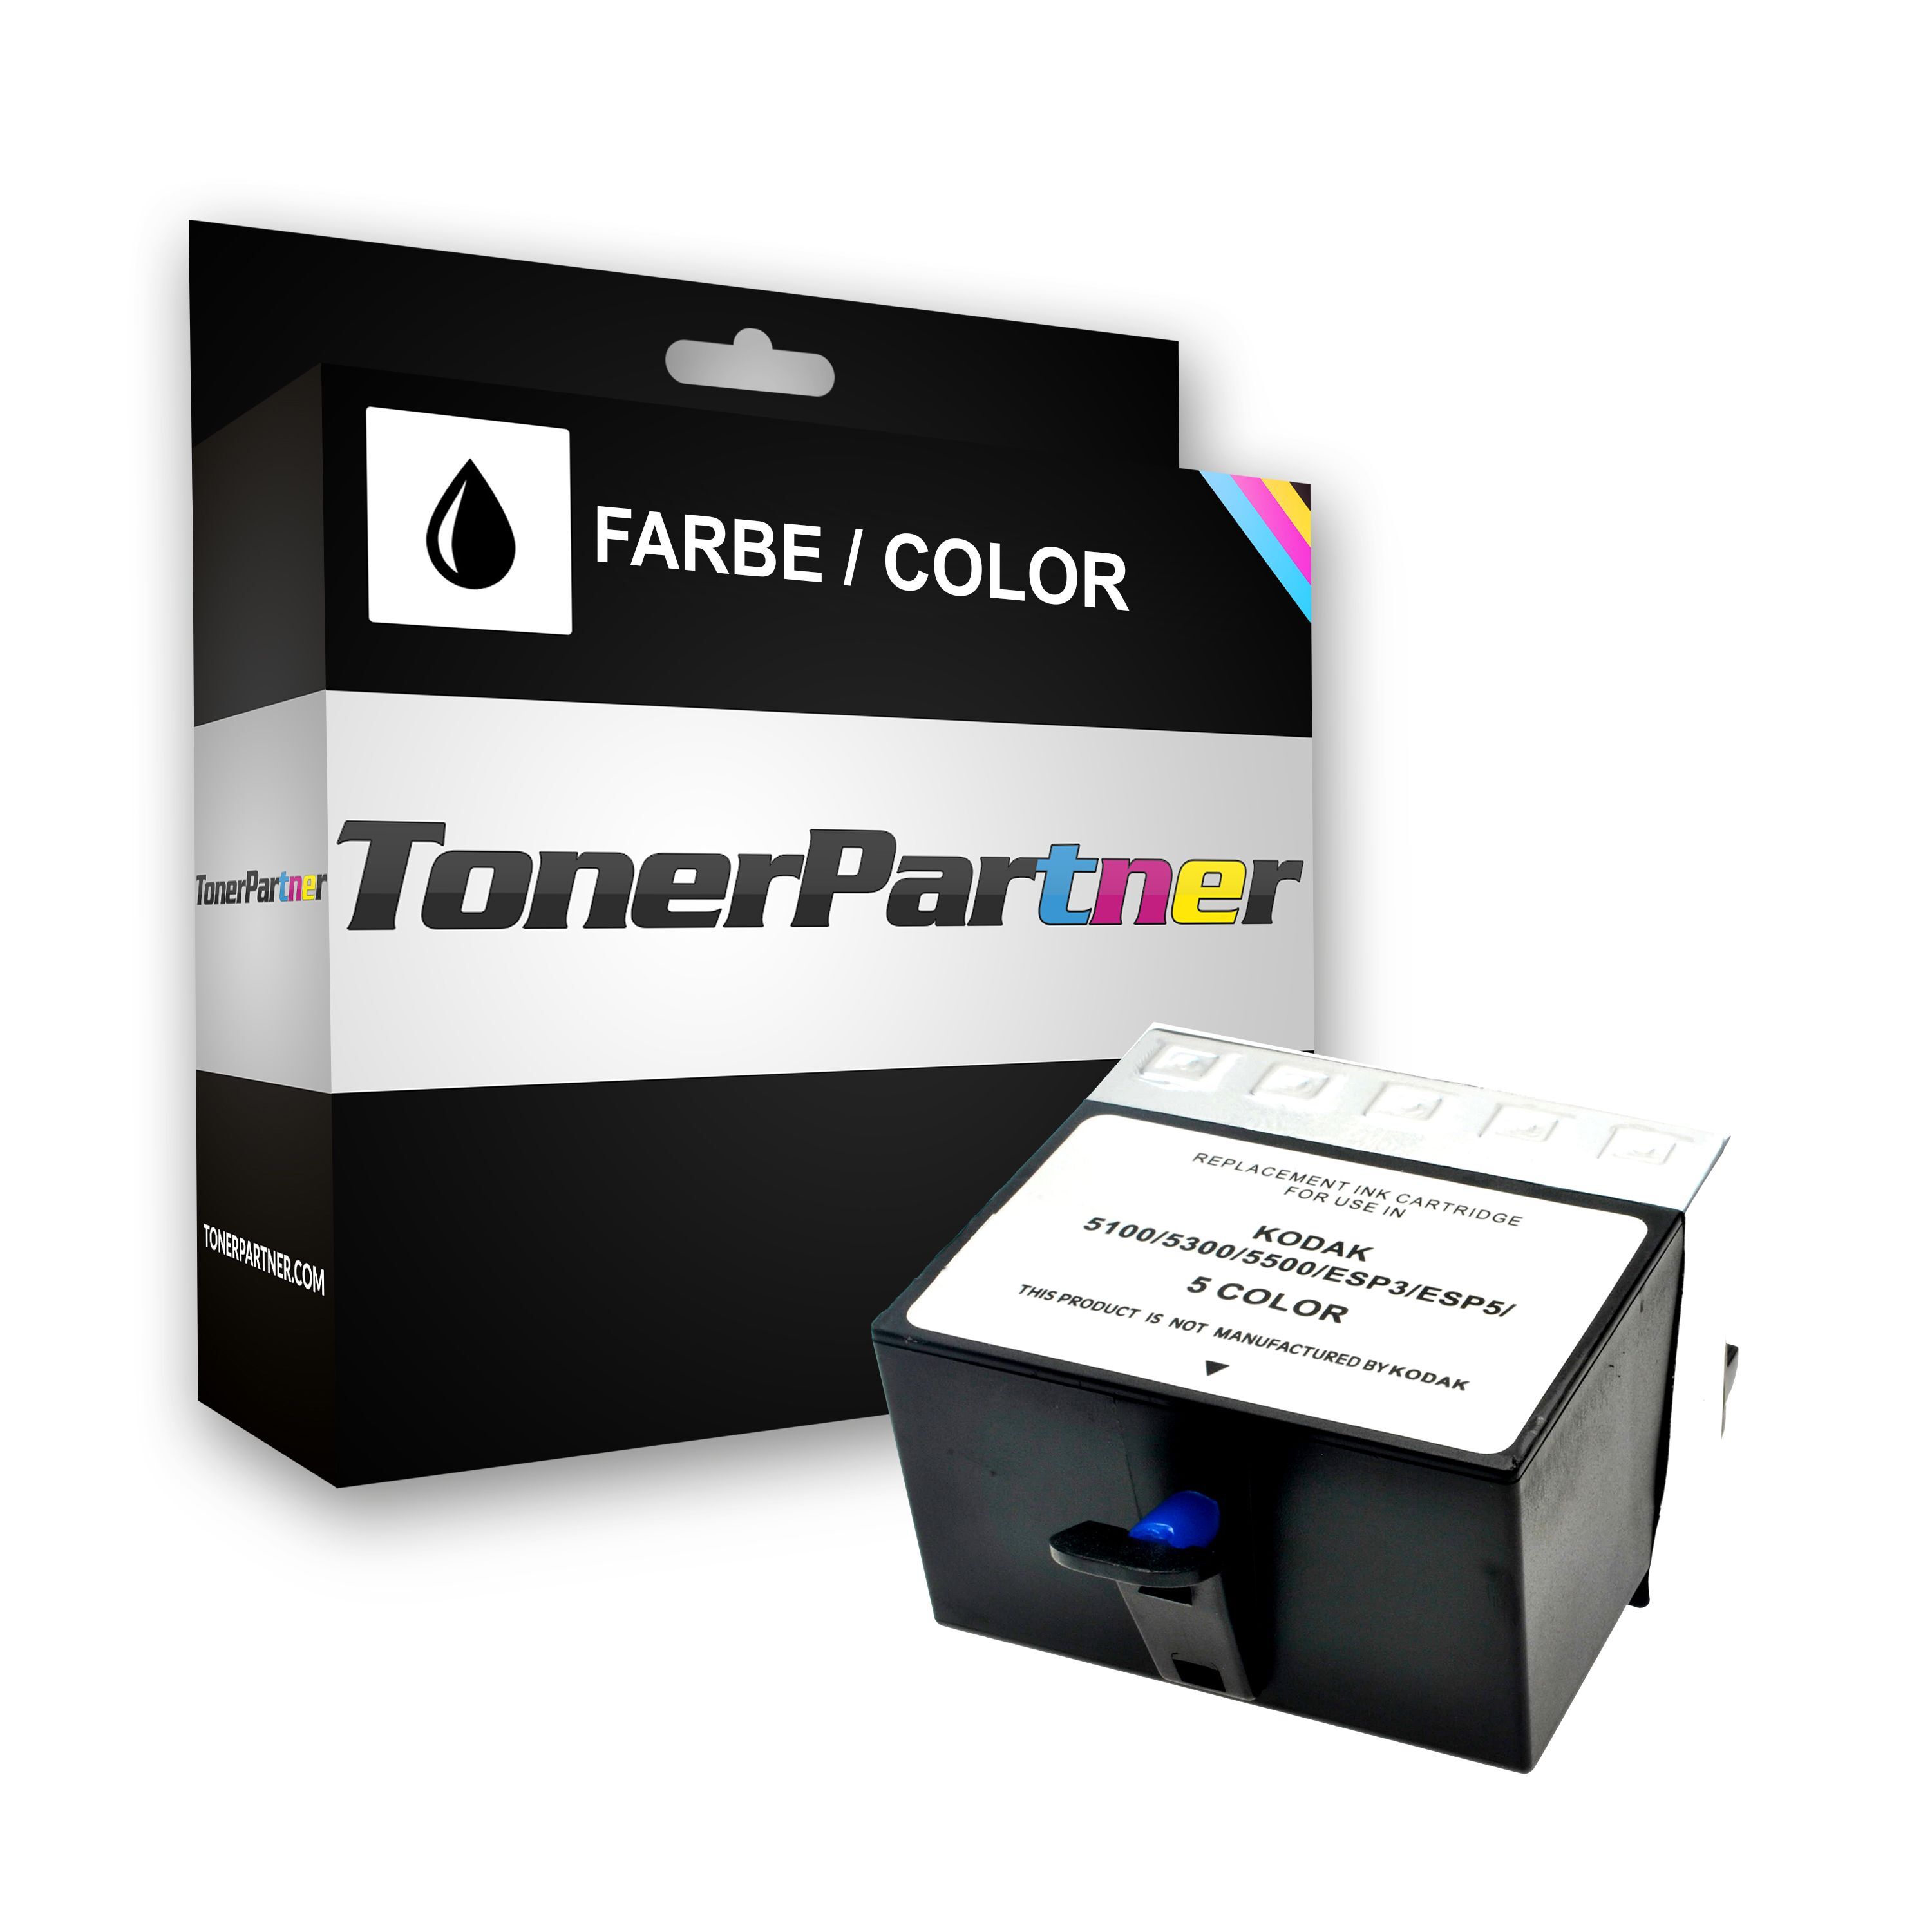 TonerPartner Compatibile con Kodak Easyshare 5500 Cartuccia stampante (10C / 3949930) colore, 490 pagine, 2.06 cent per pagina, Contenuto: 62 ml di